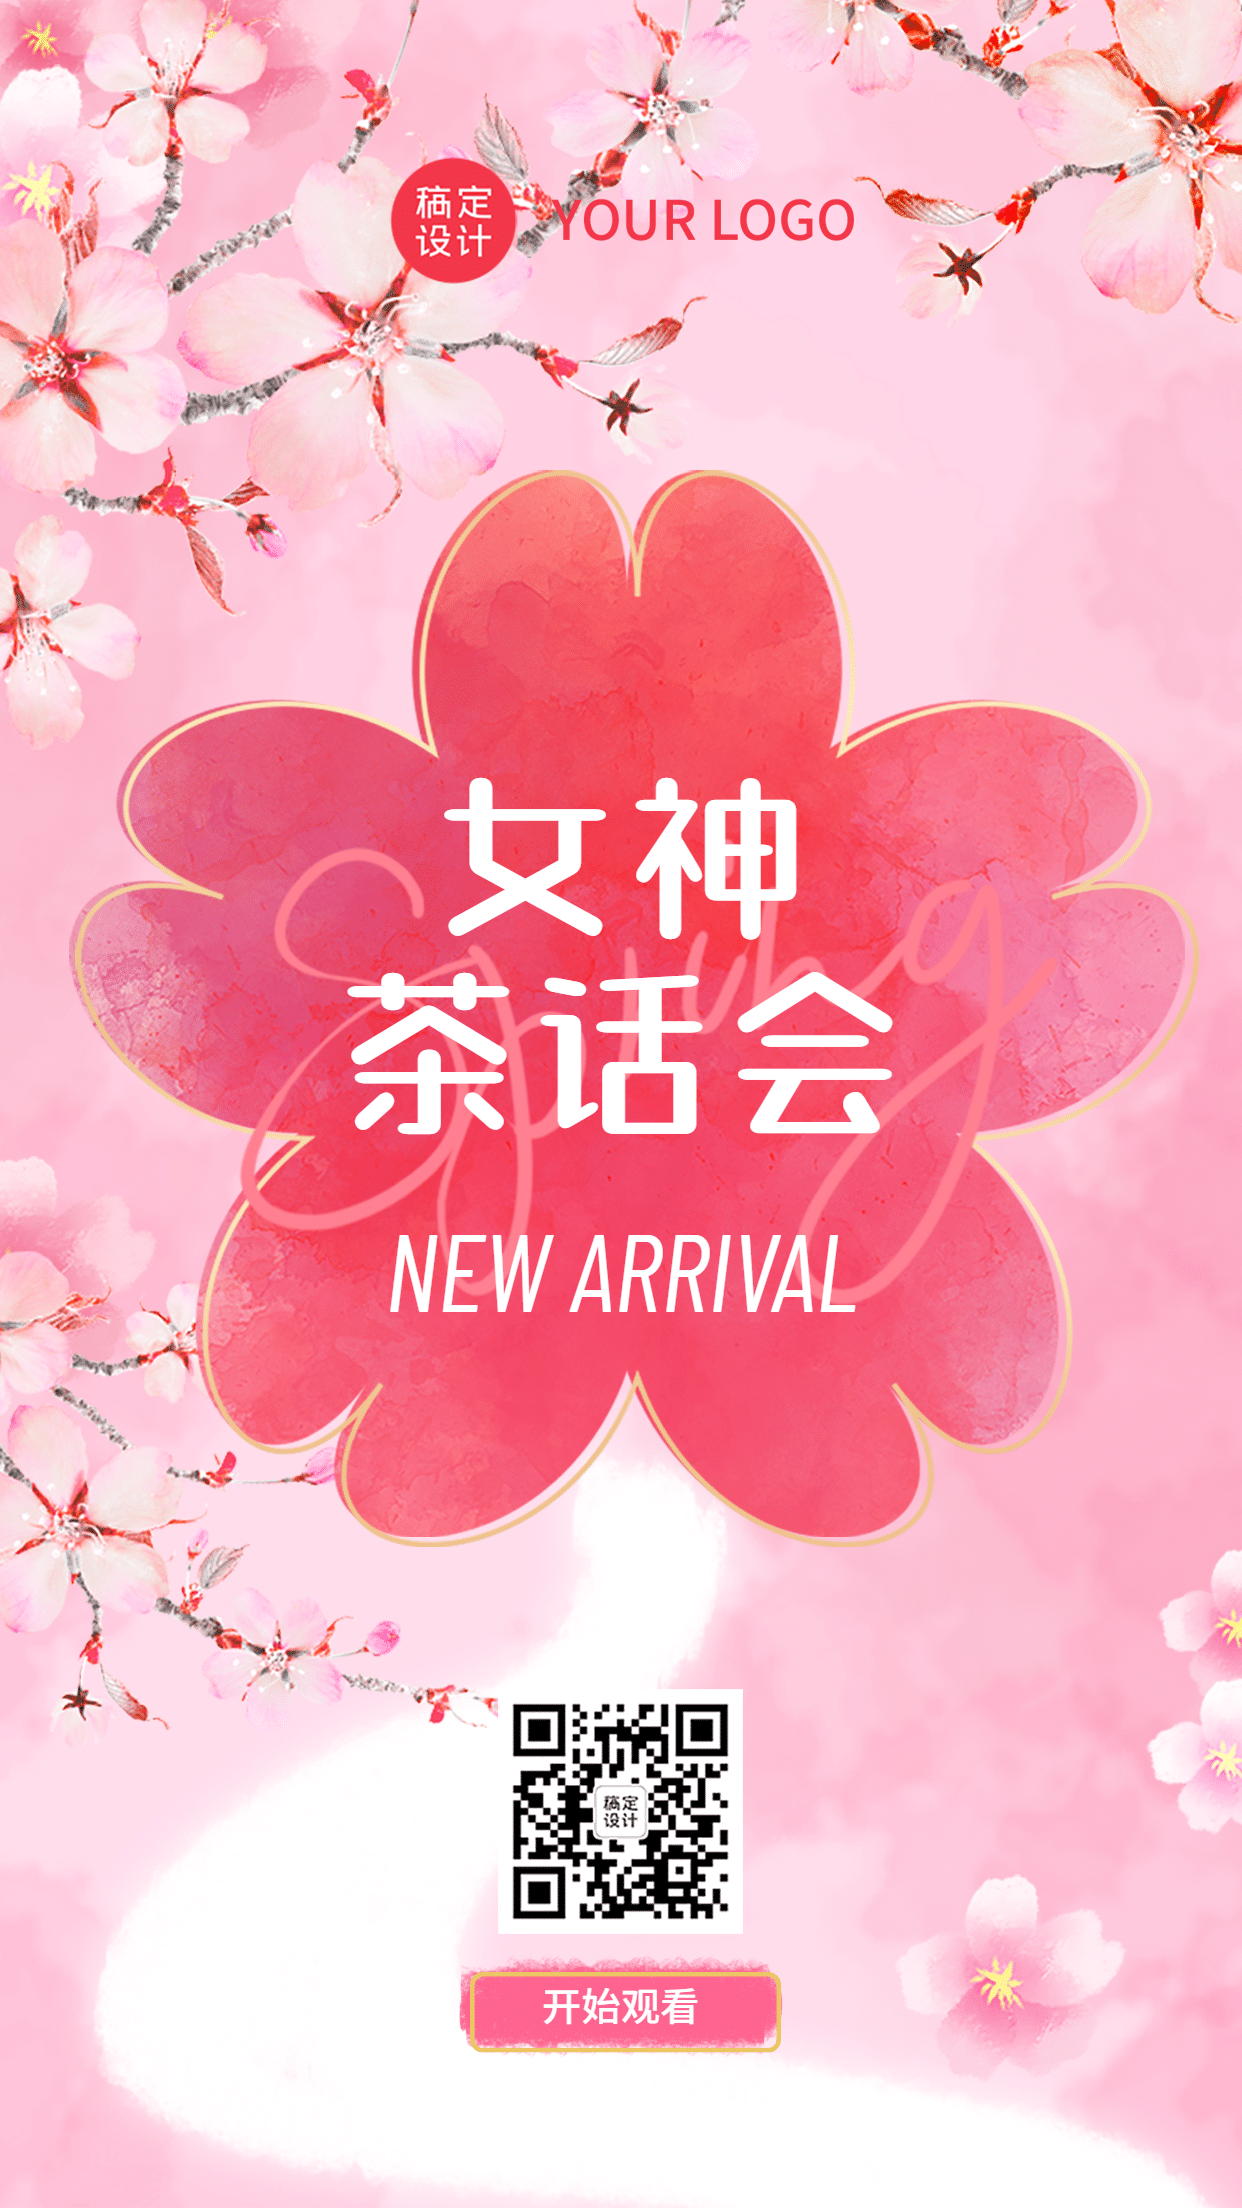 商品零售春季樱花节新品发布会邀请清新实景海报预览效果